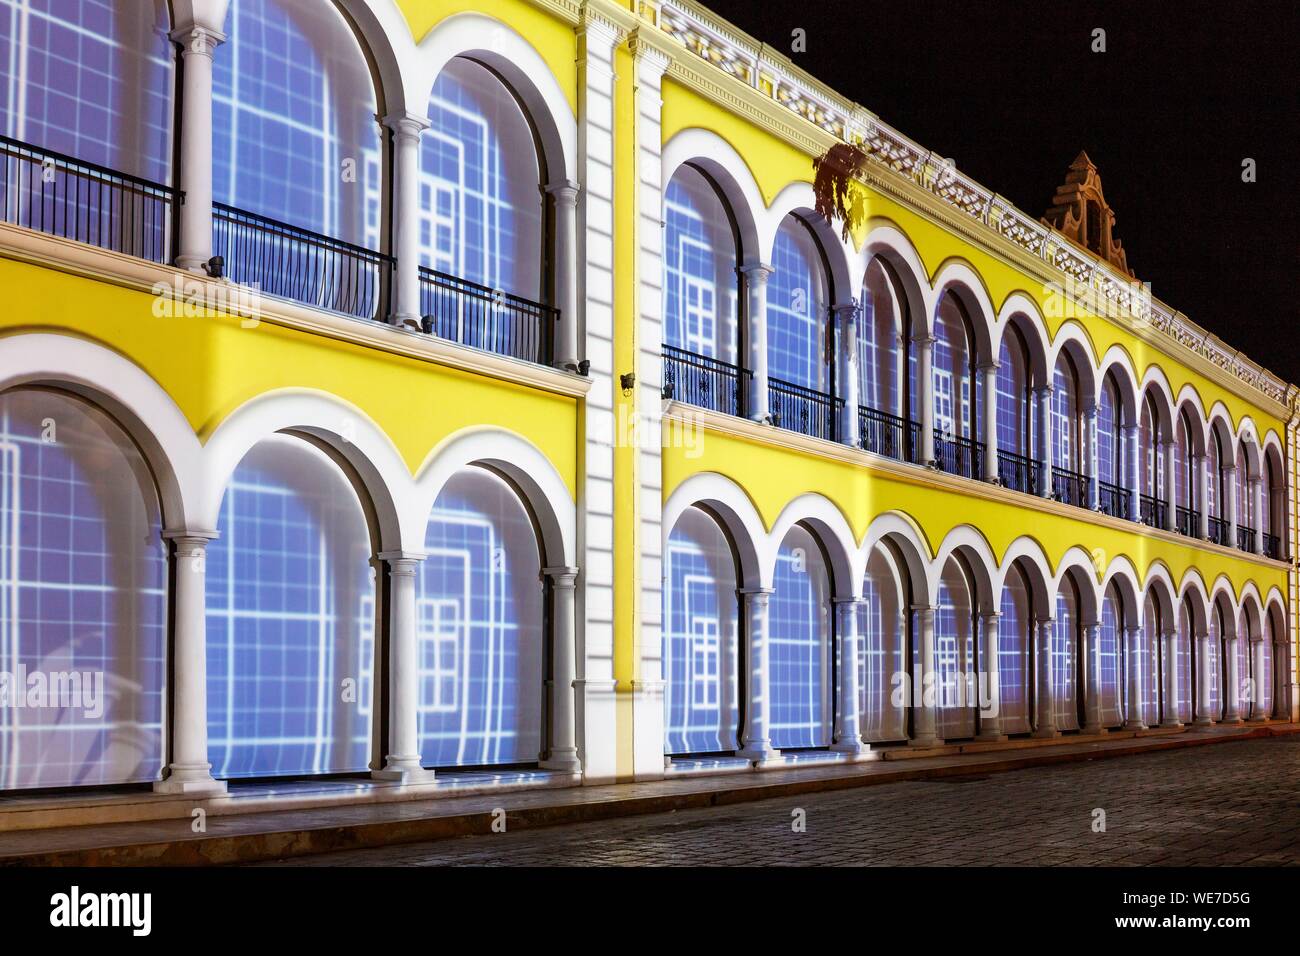 Mexiko, Campeche, Campeche, befestigte Stadt als Weltkulturerbe von der UNESCO, Rathaus Fassade bei Nacht Stockfoto